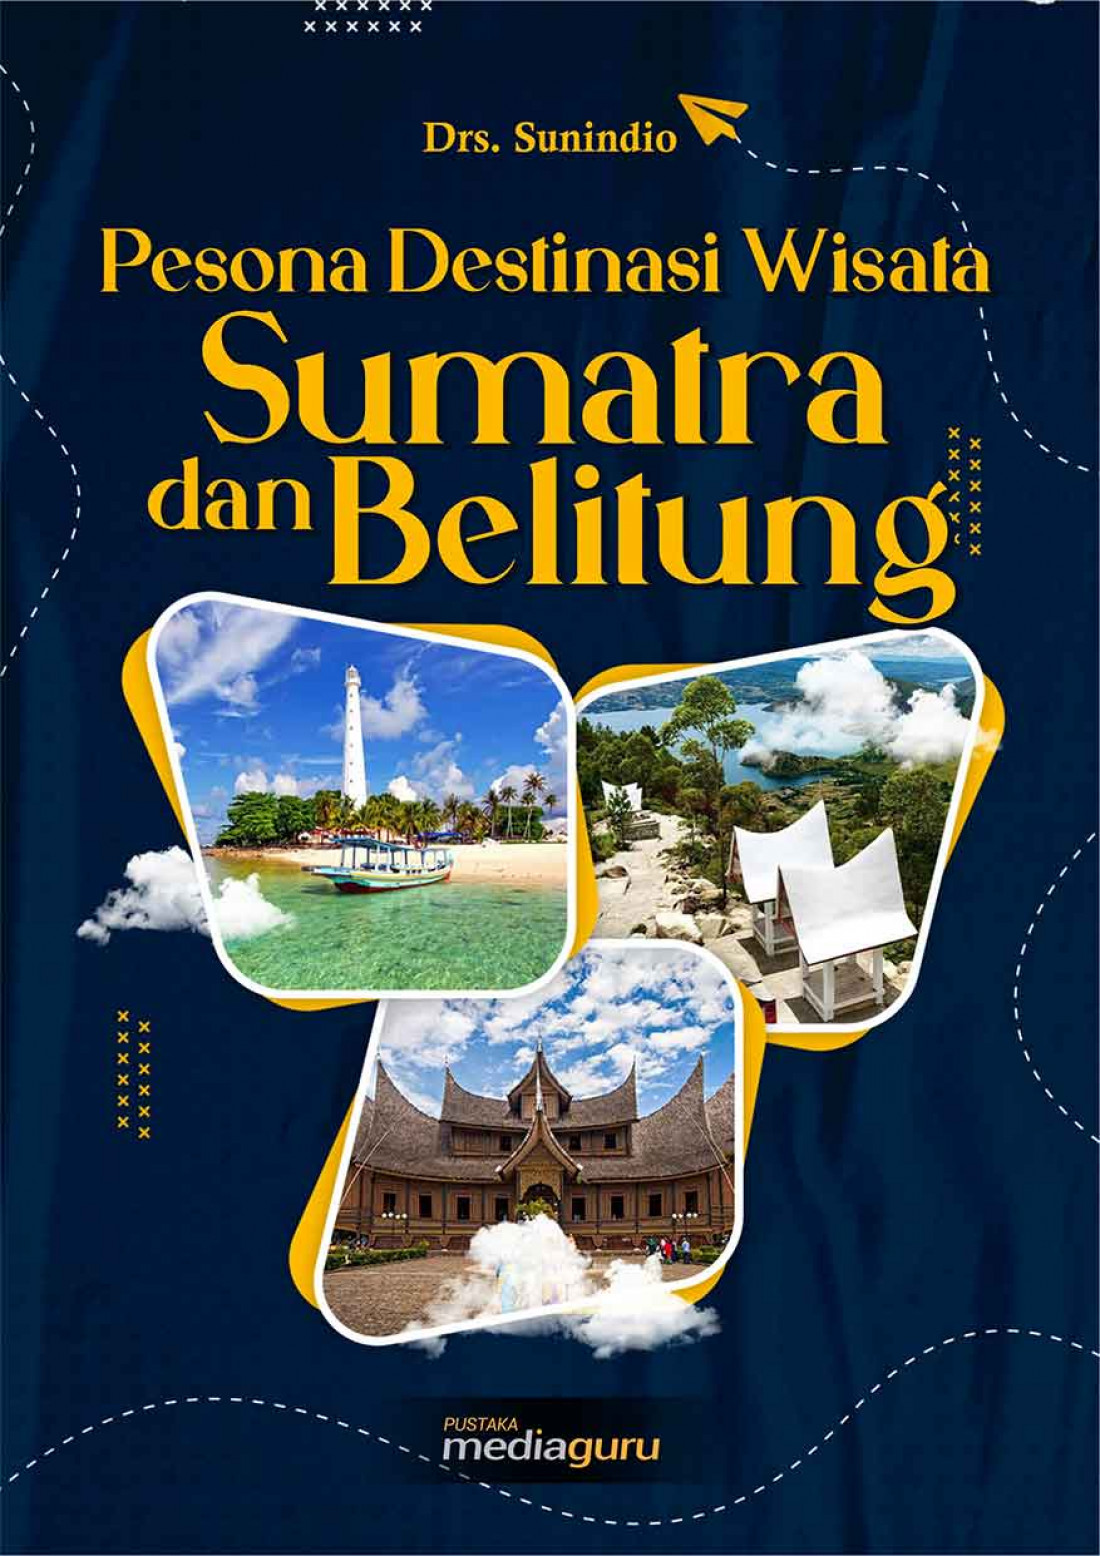 Pesona Destinasi Wisata Sumatra Selatan dan Belitung